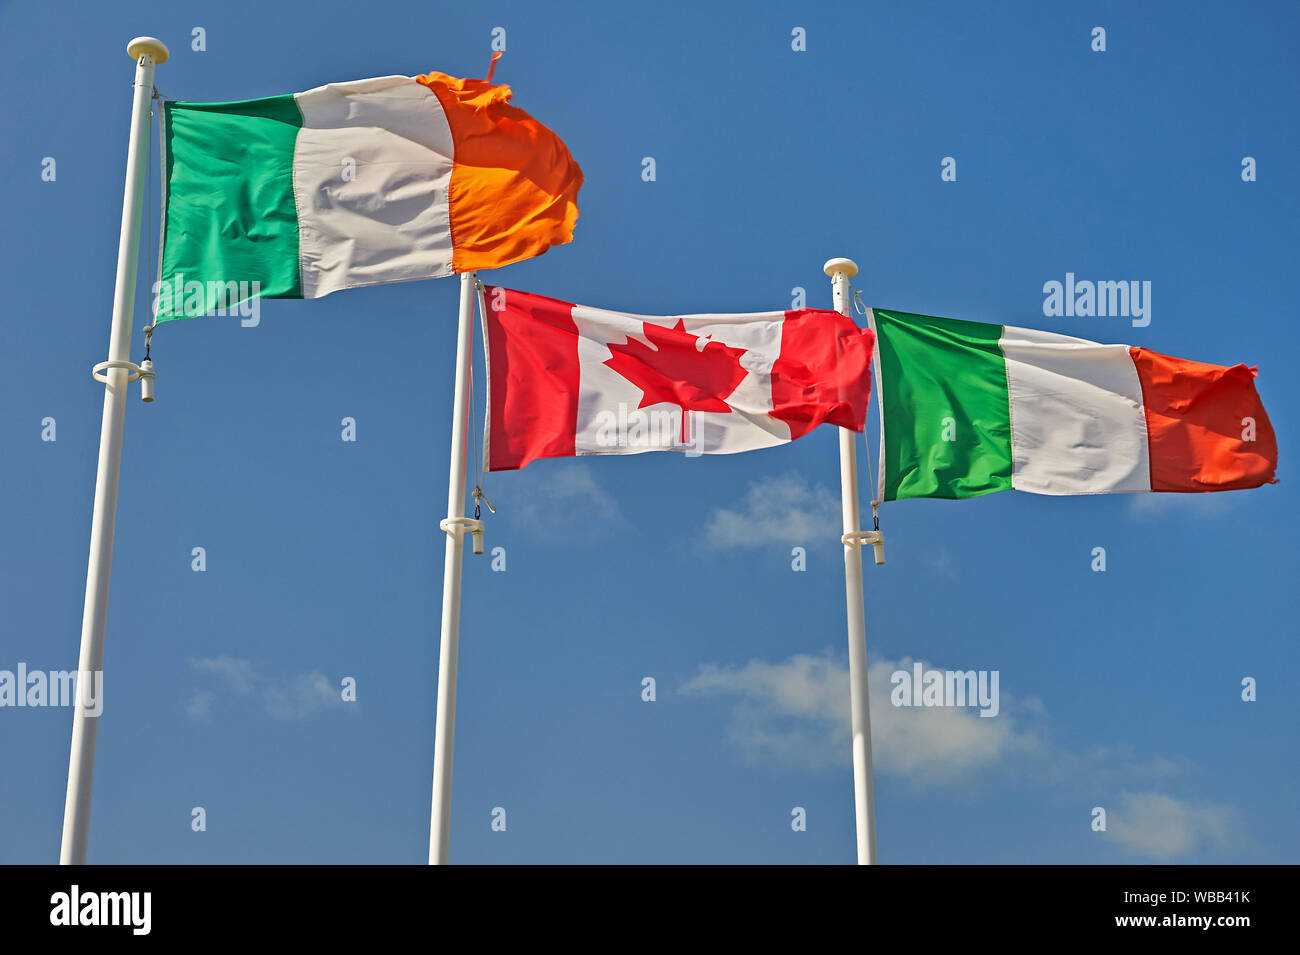 Las banderas de Italia, Canadá y la República de Irlanda (Eire)volando sobre mástiles contra un cielo azul. Foto de stock